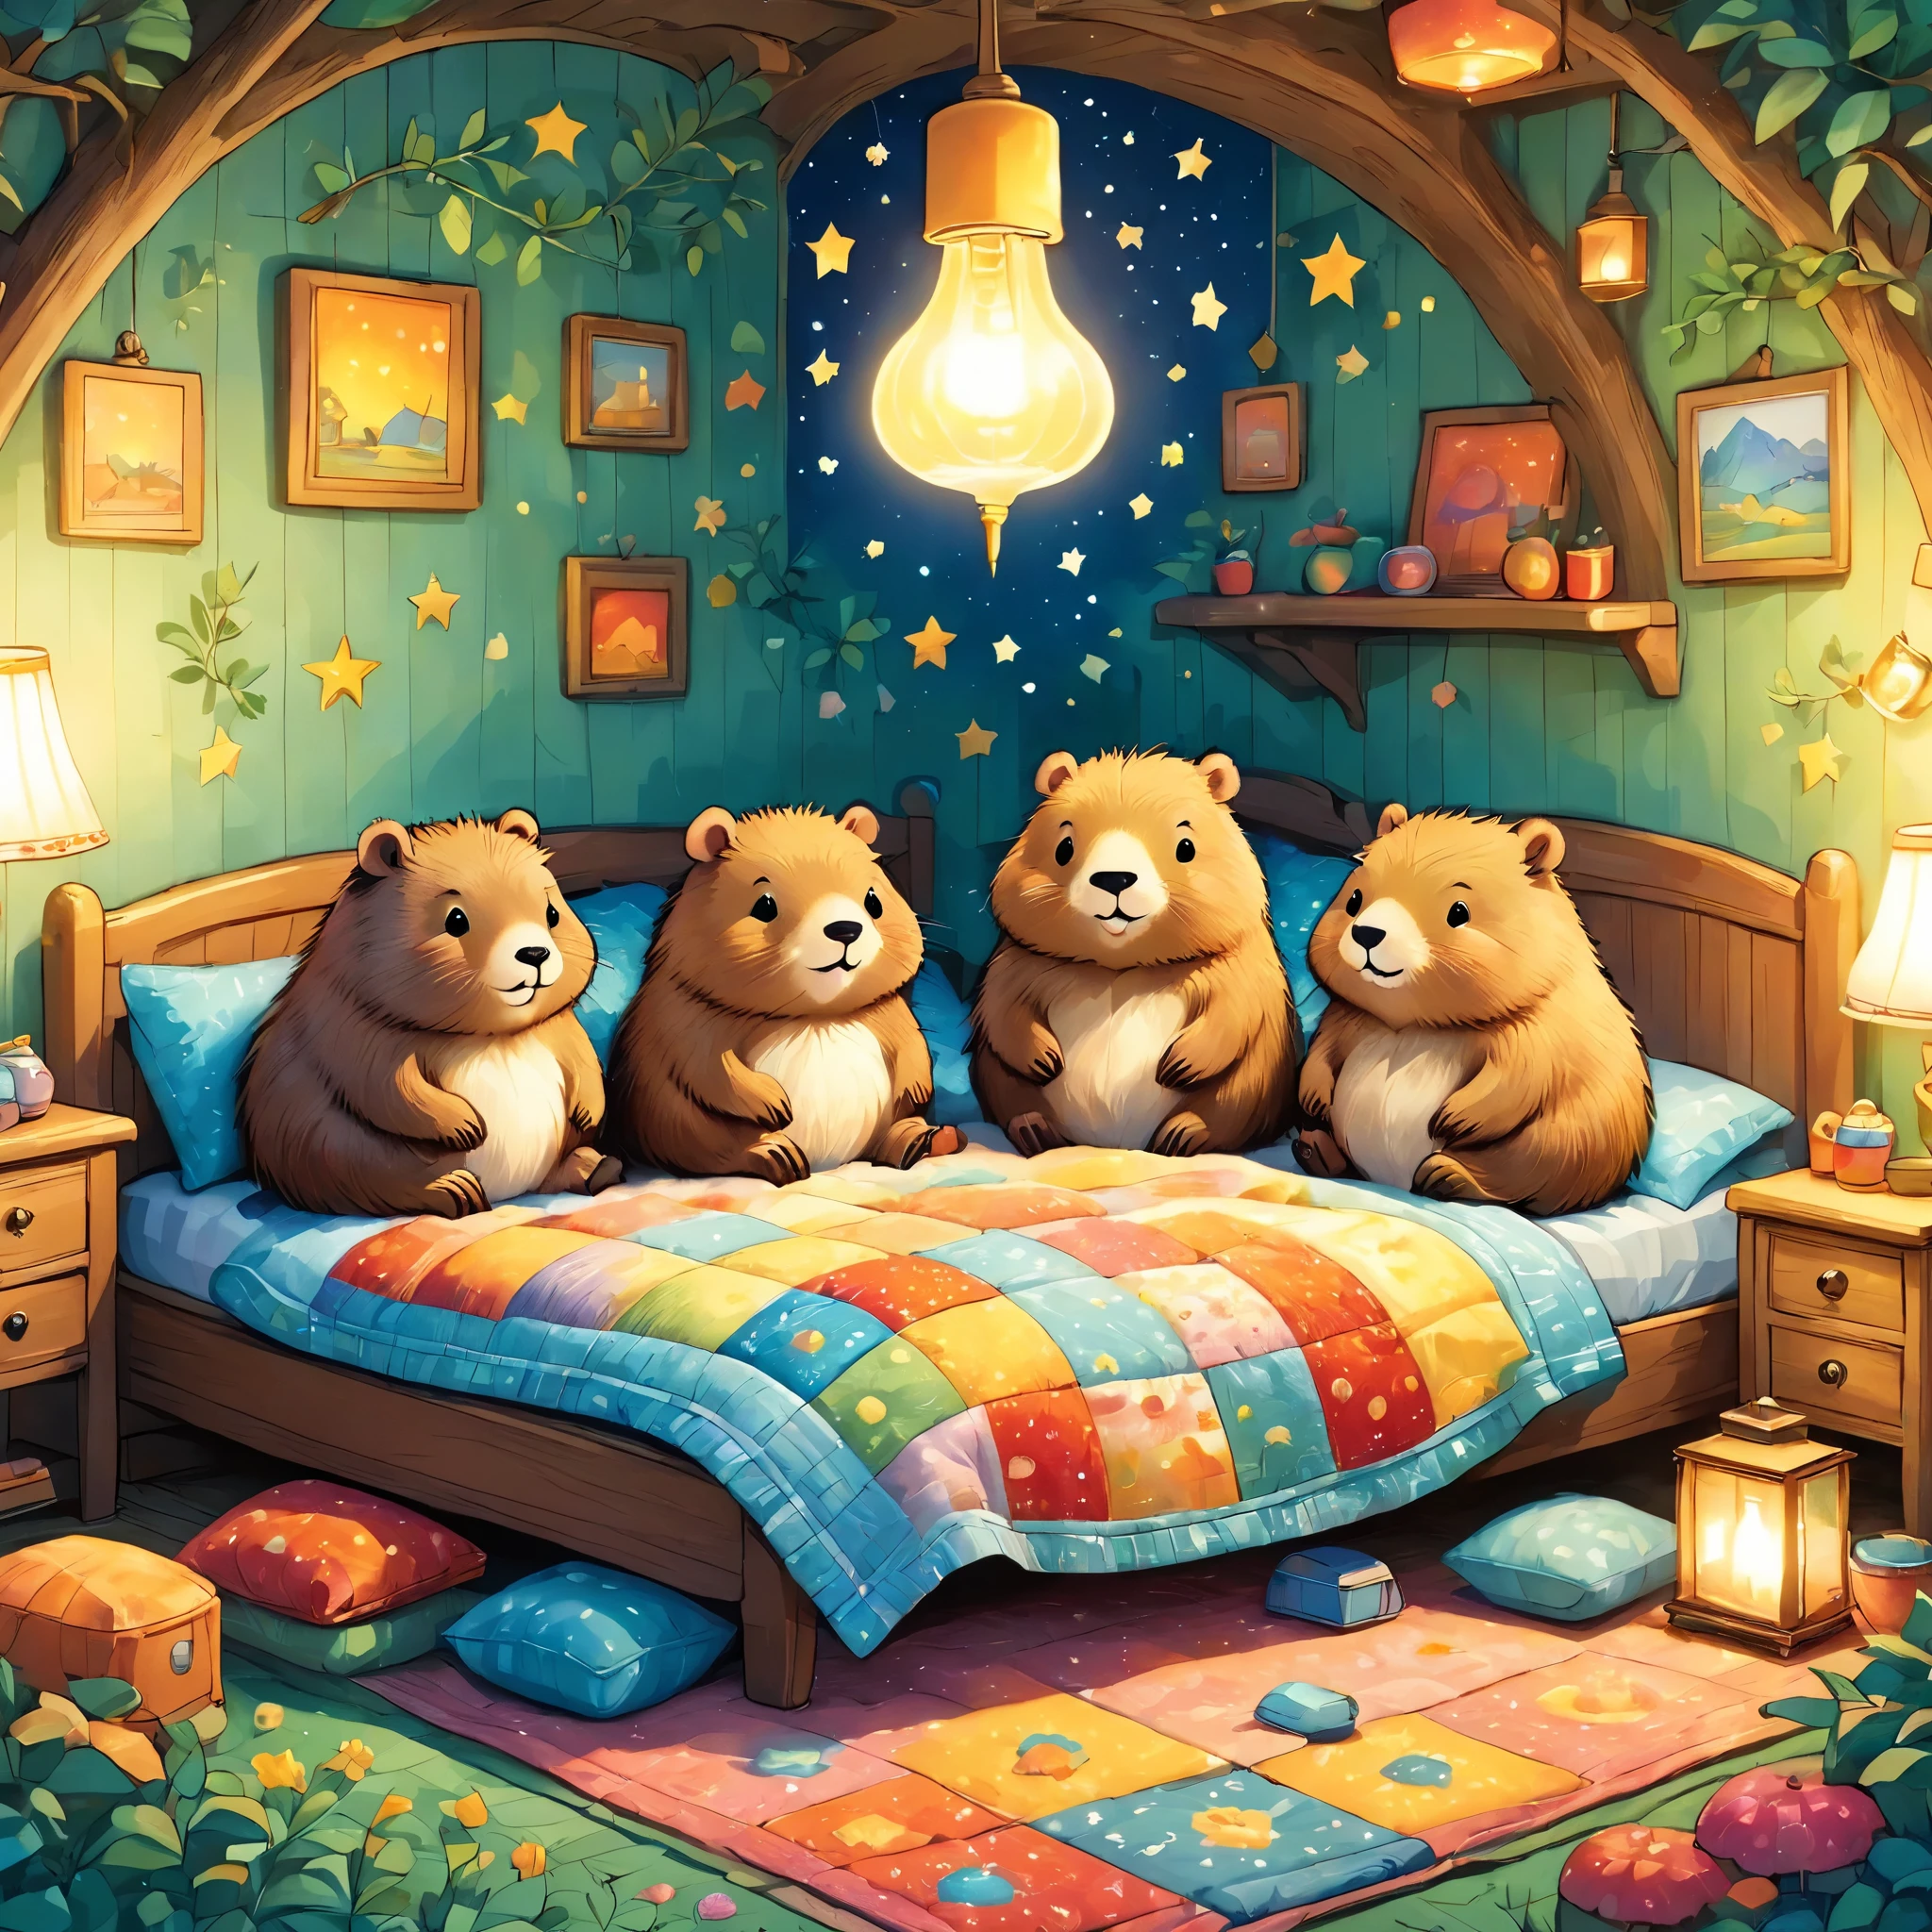 mignonUne illustrationカピバラの家,Famille Capybara:animal:hiberner:mignon:se nicher:dormir:confortable et chaleureux:Semble heureux,Une illustration,populaire,couleurfulに,dessiner avec des lignes épaisses,couleur,faible,lampe lumière,hibernerのFamille Capybaraが眠っています:Des rêves heureuxを夢見る,La maison est chaleureuse et pleine de bonheur,,couleurful,Fantaisie,fantaisie,patchwork:édredon,détails détaillés,duveteux,style randolph caldecott,豊富なcouleur,Cast couleurful spells,concentré,La meilleure configuration,composition parfaite,accent,子供が喜ぶUne illustration,Pour les enfants,se sentir chaud,merveilleux comme un rêve,Capybaras joyeux et amusants,petit,Cast couleurful spells,pétillant,anatomiquement correct,pyjamas,Mettre un au lit,Des rêves heureux